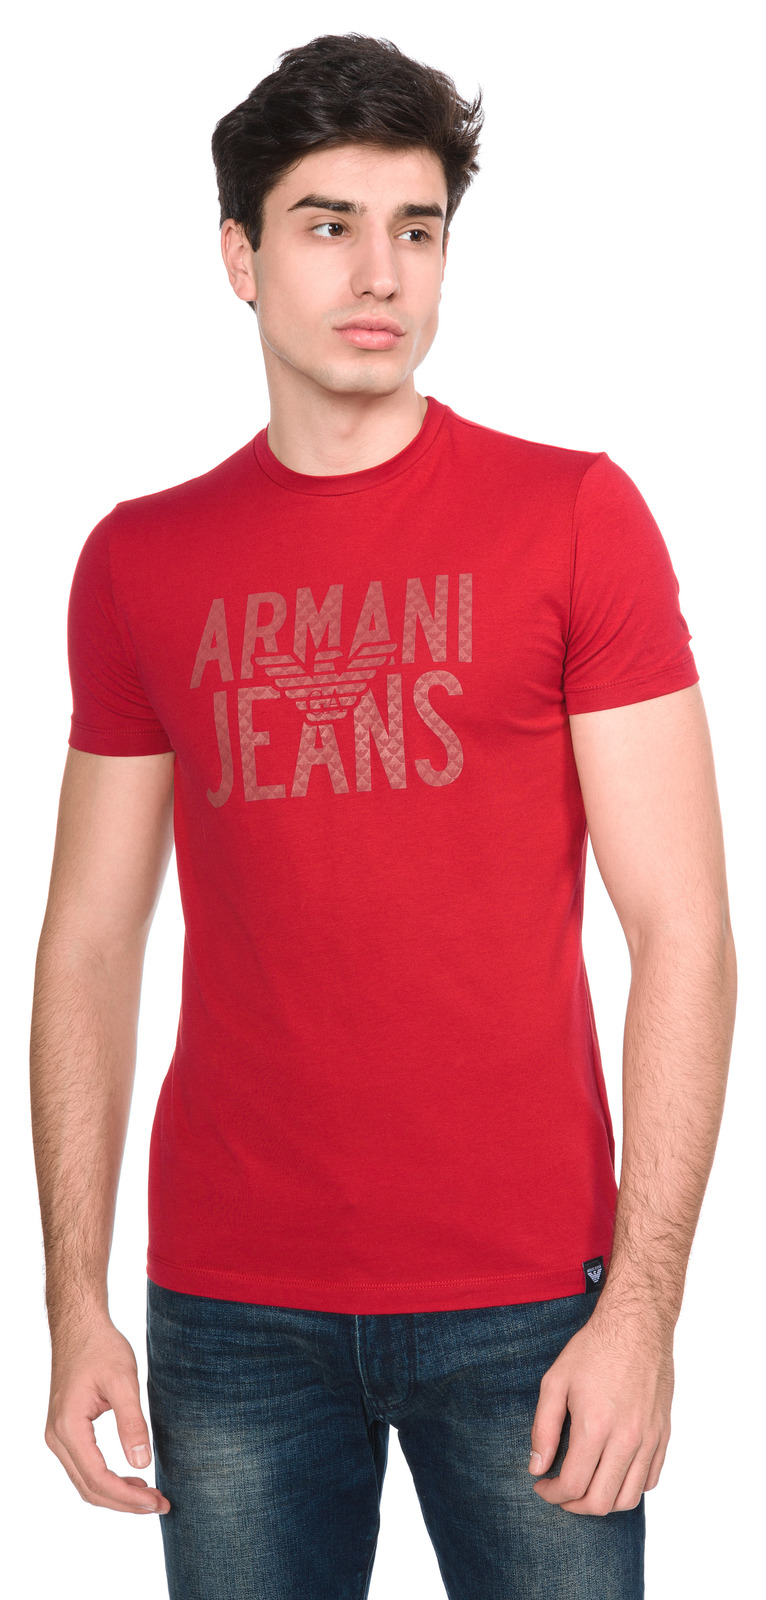 Armani Jeans Póló L, Piros fotója